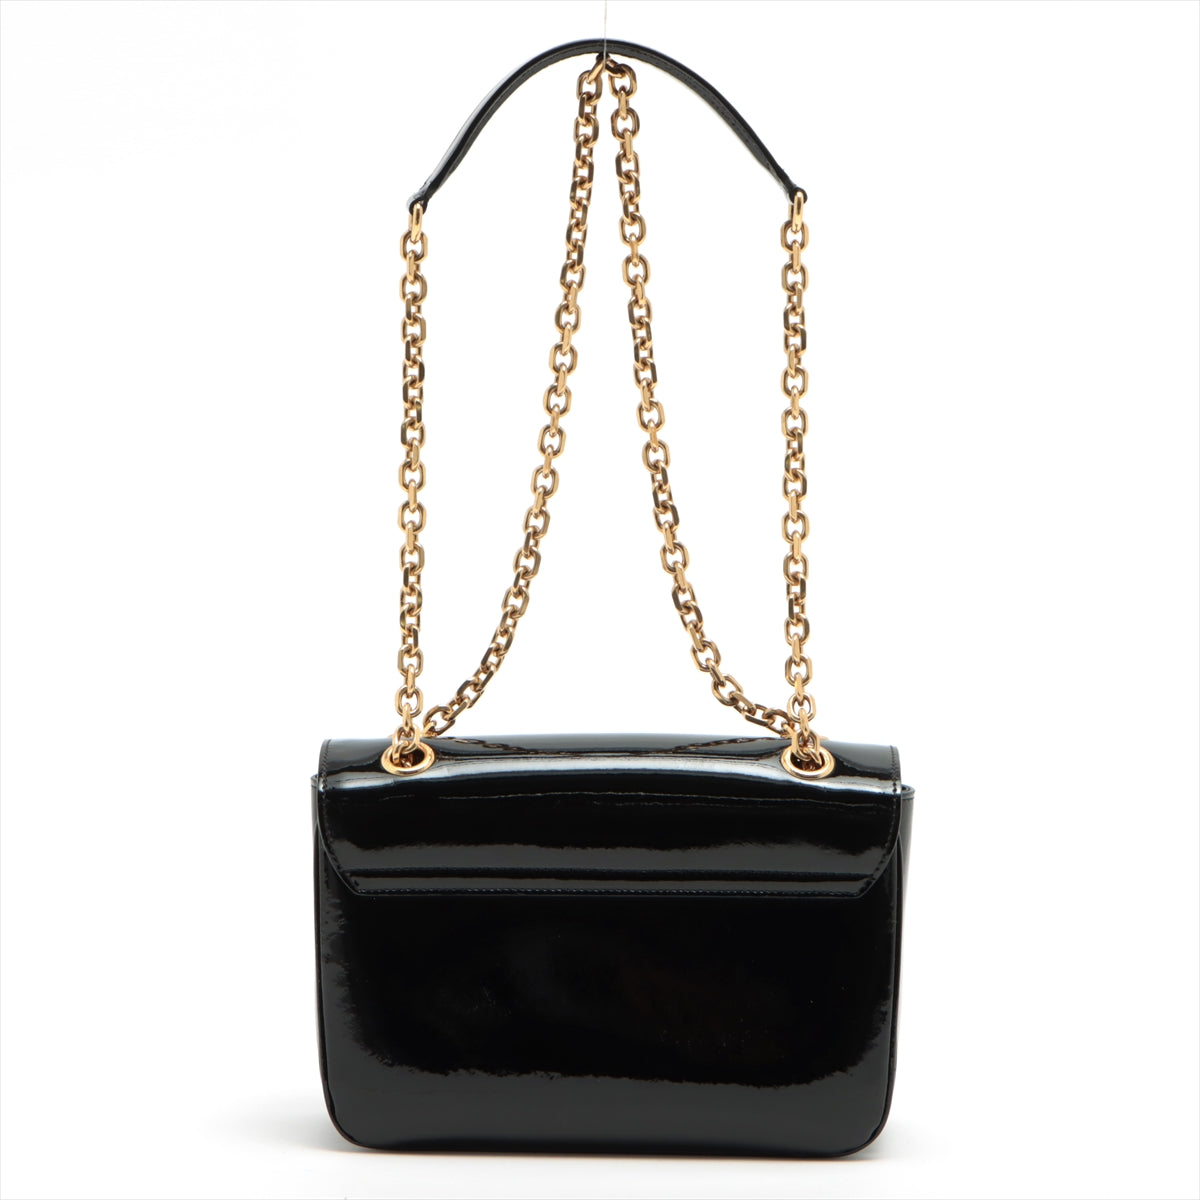 CELINE Sées Patent leather Chain shoulder bag Black